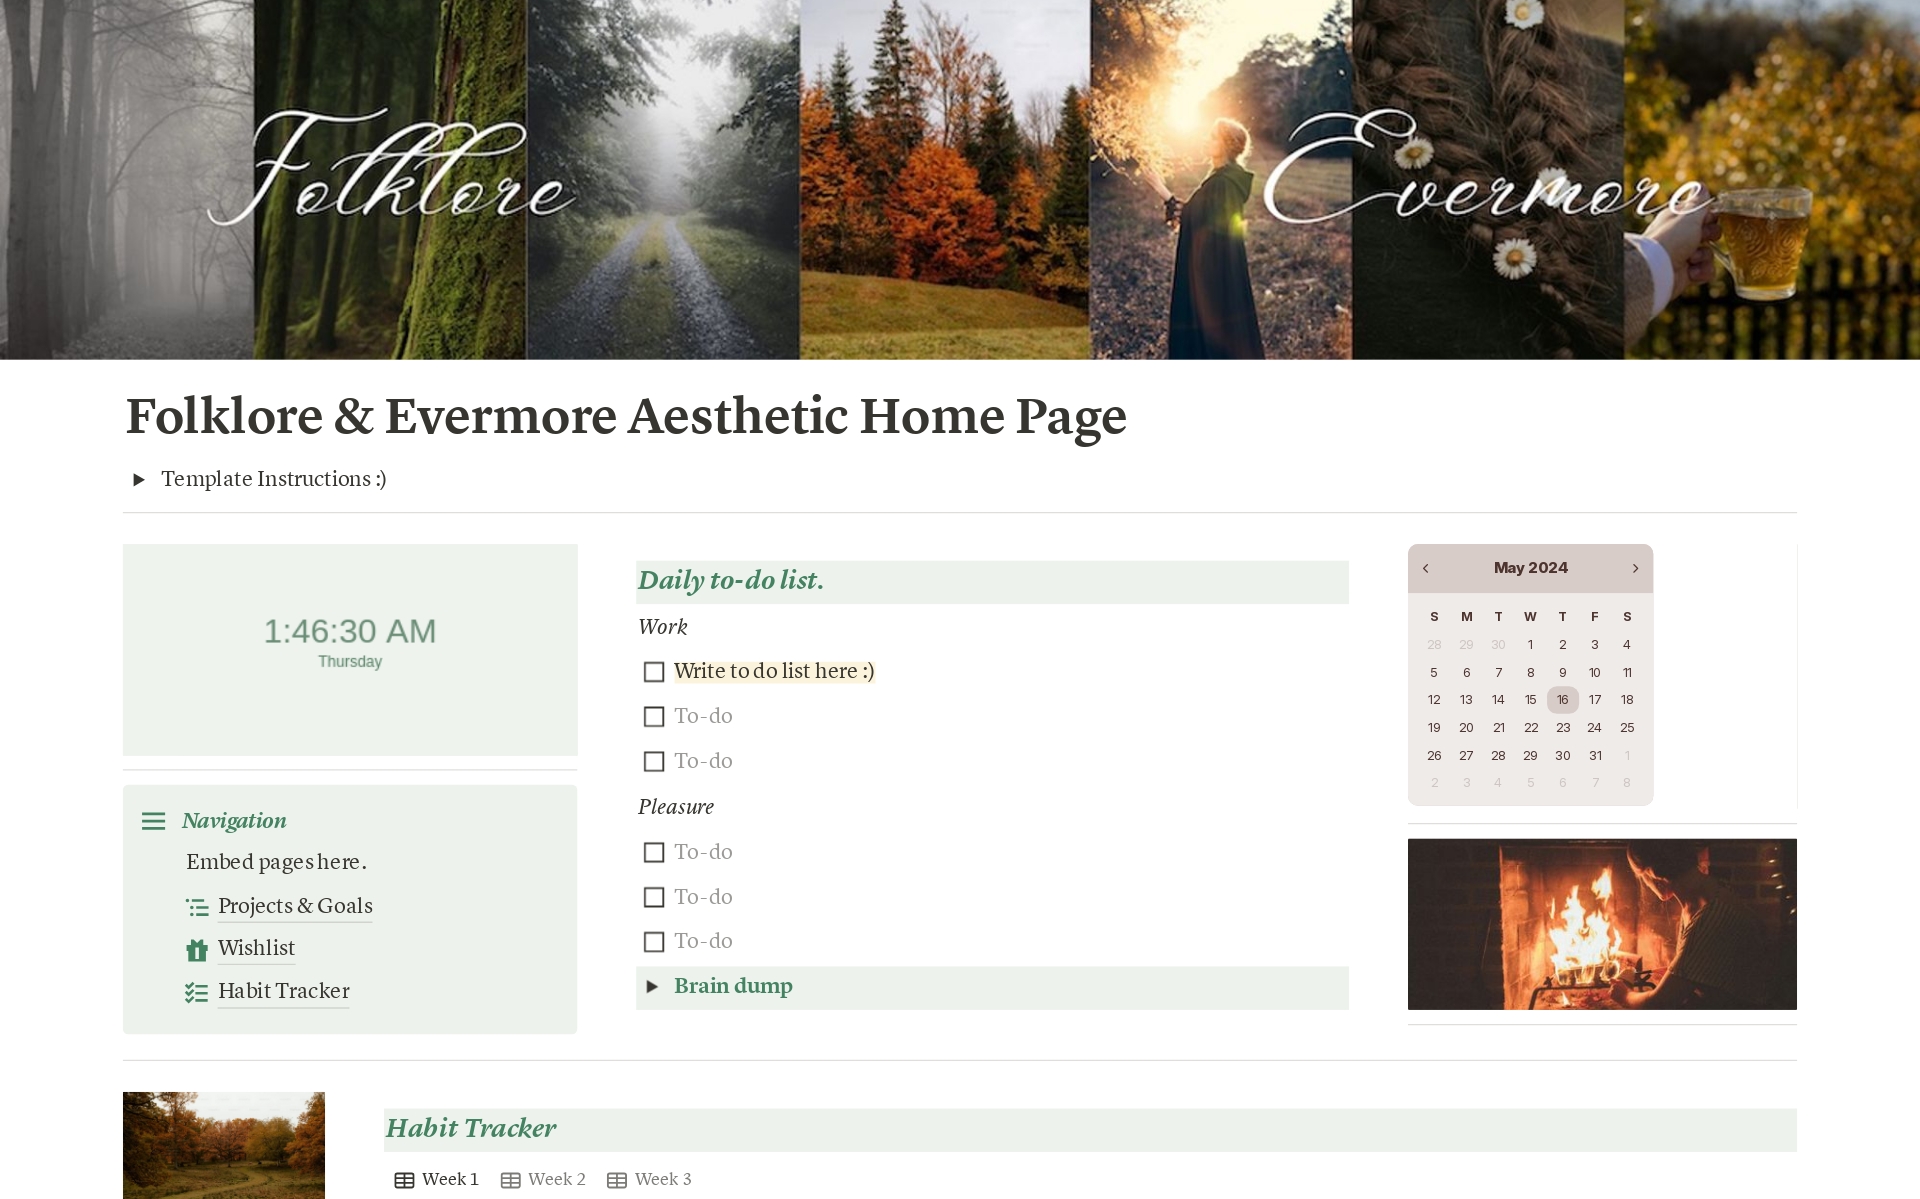 Uma prévia do modelo para Folklore & Evermore Aesthetic Home Page